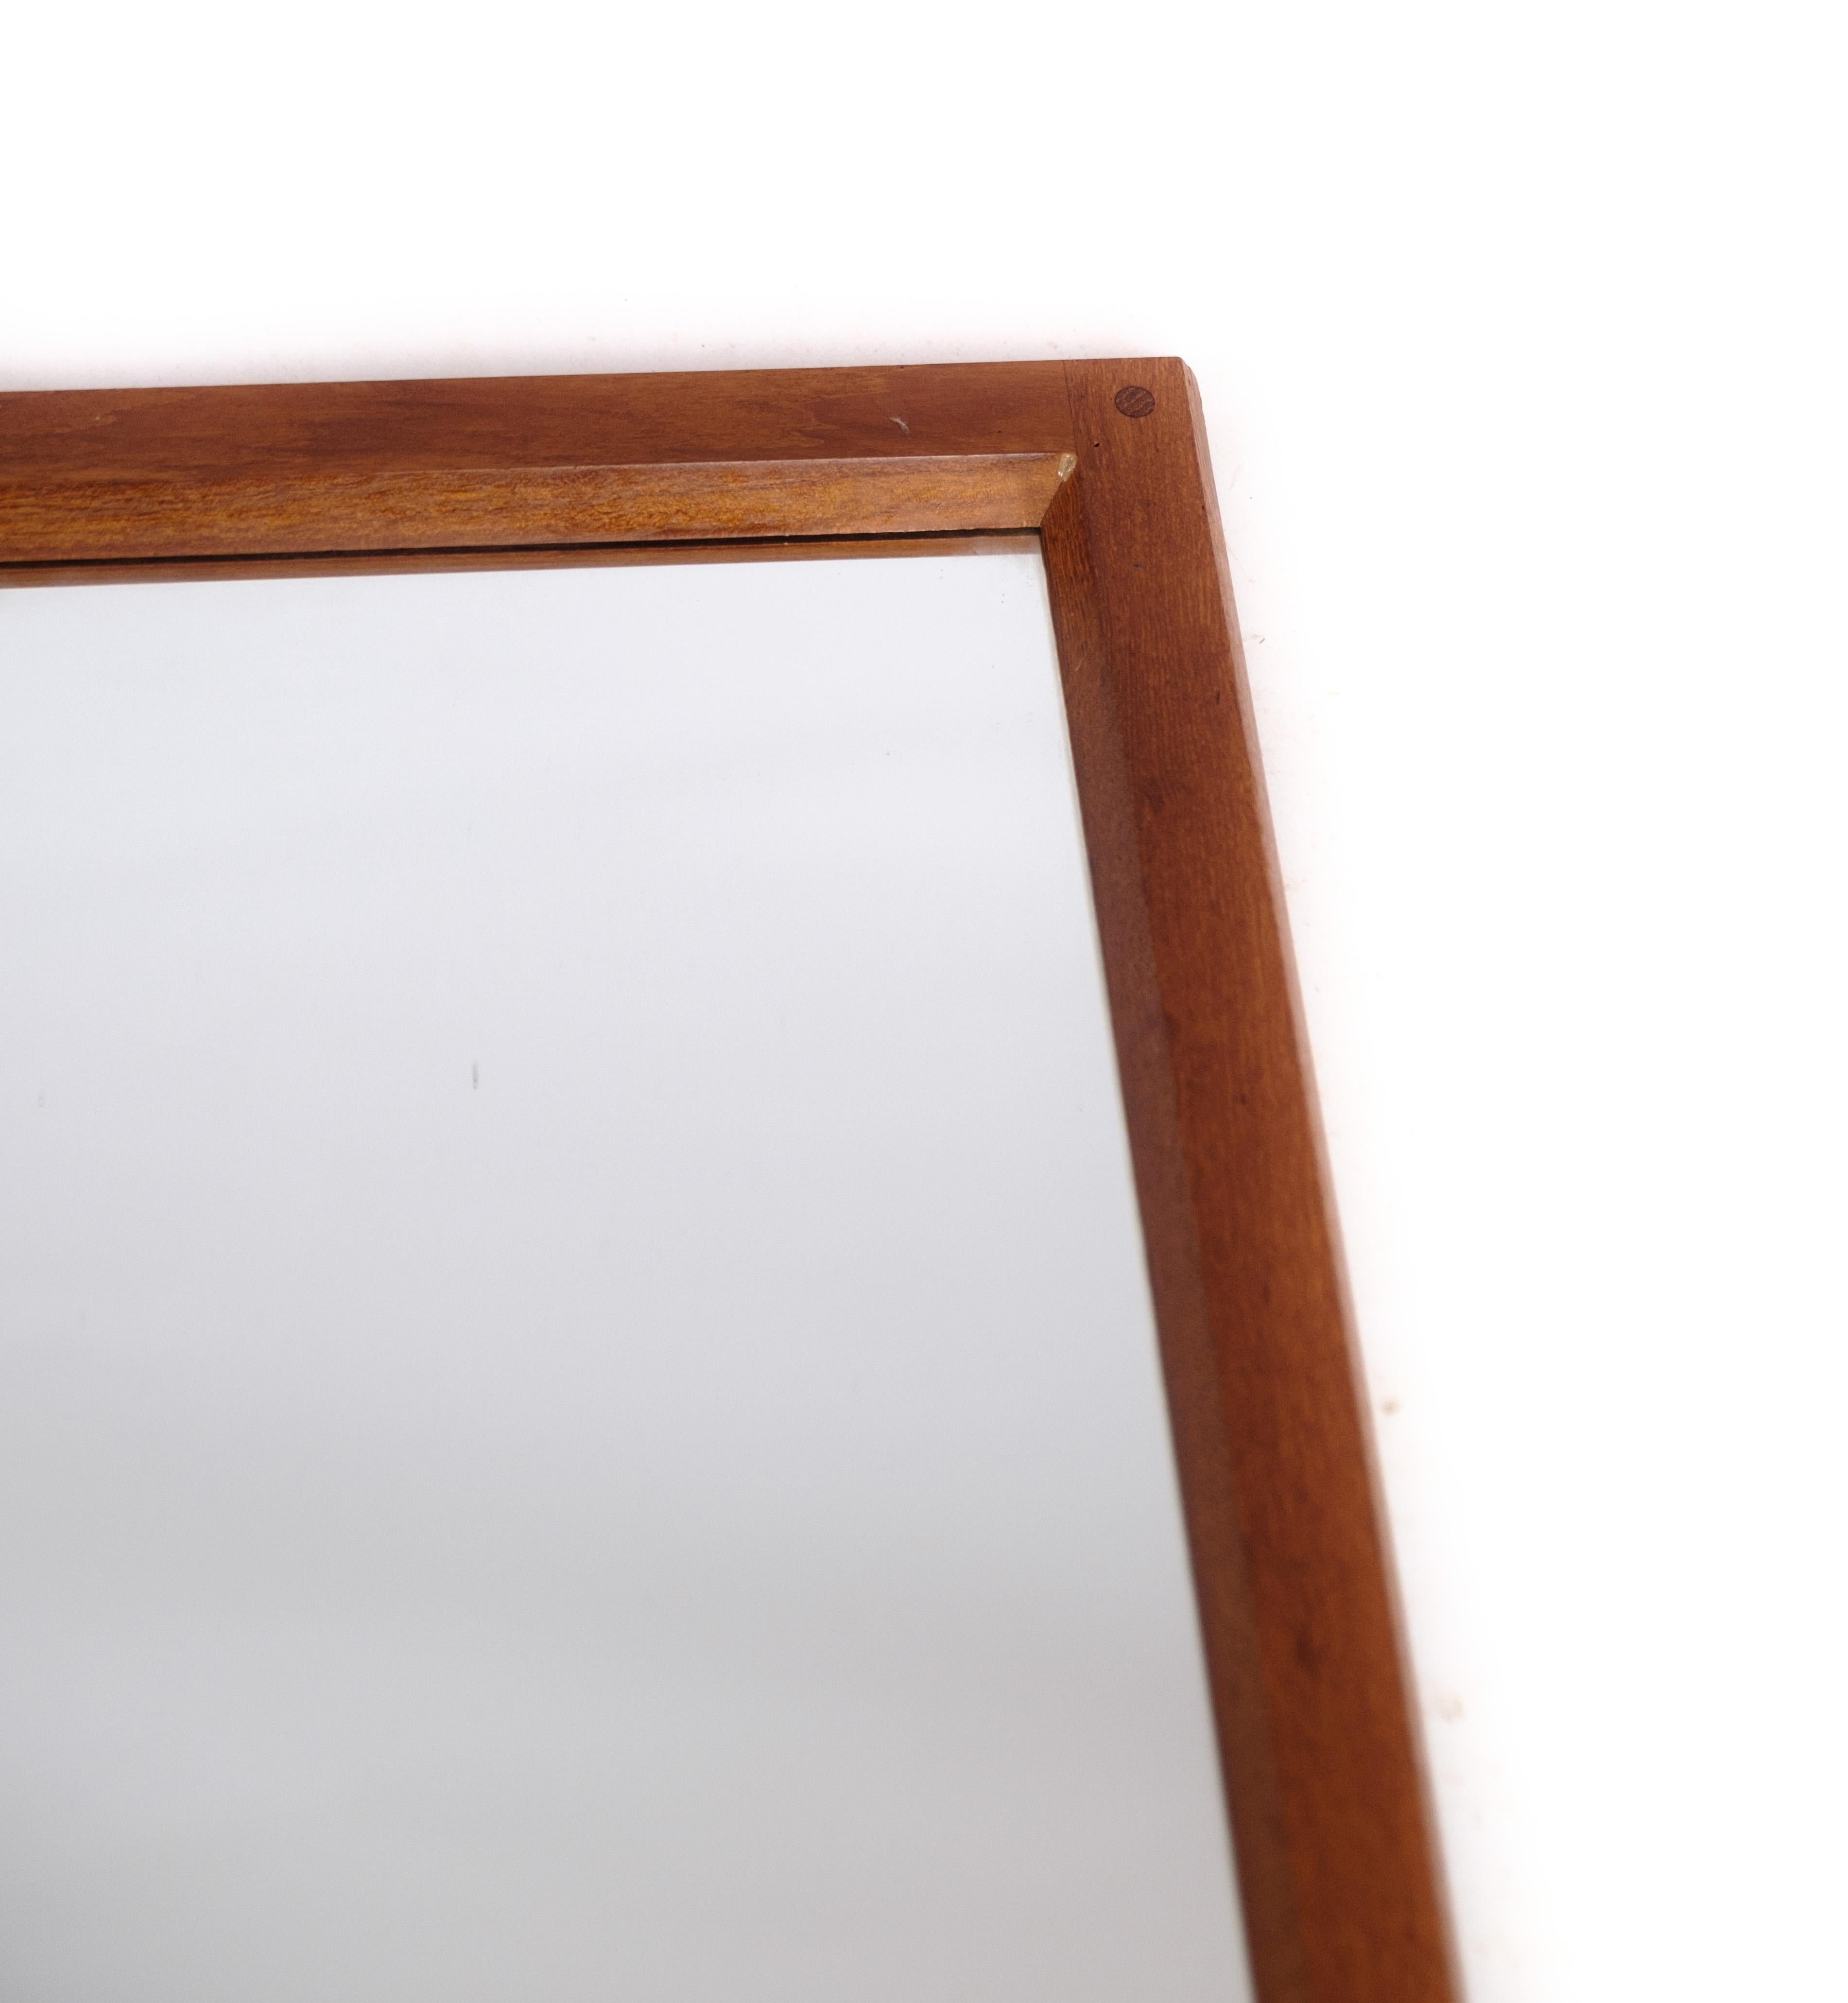 Dieser Spiegel ist ein schönes Beispiel für modernes dänisches Design mit einem Rahmen aus Teakholz. Das Design wird Aksel Kjersgaard zugeschrieben, einem dänischen Möbeldesigner, der für seine funktionalen und eleganten Stücke bekannt ist. Der